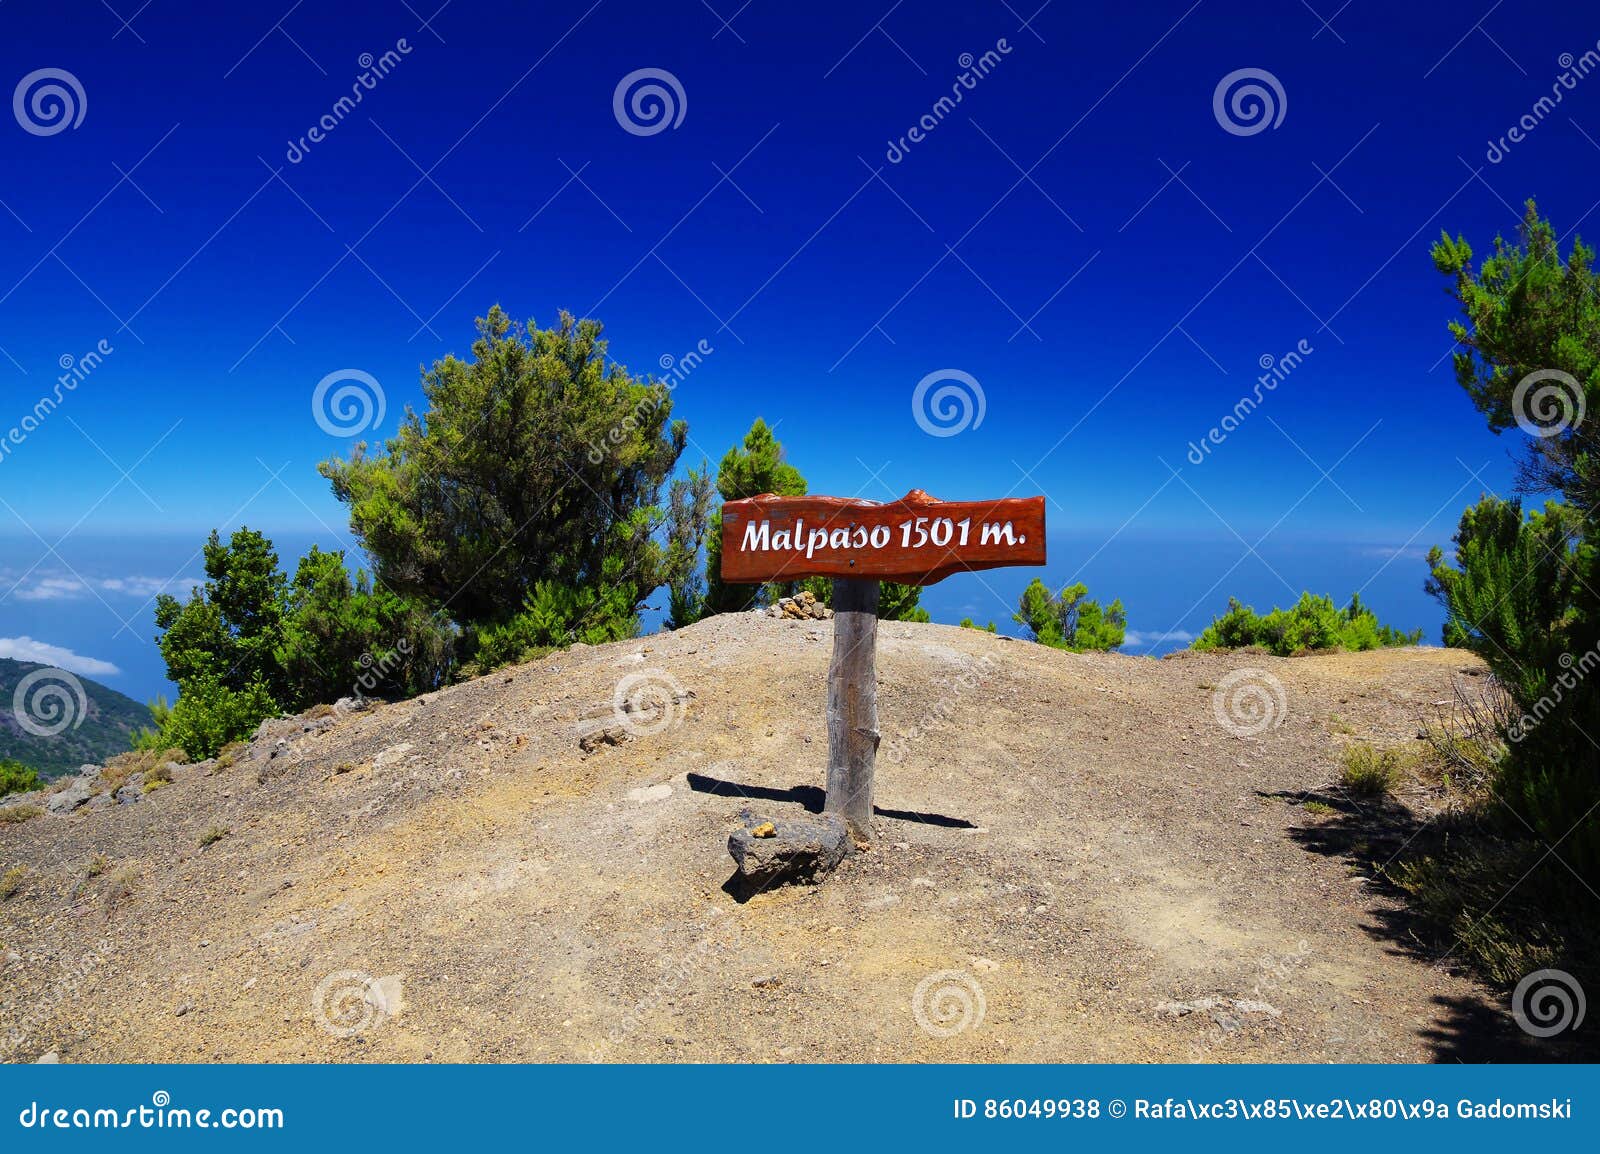 el hierro - the top of malpaso mountain